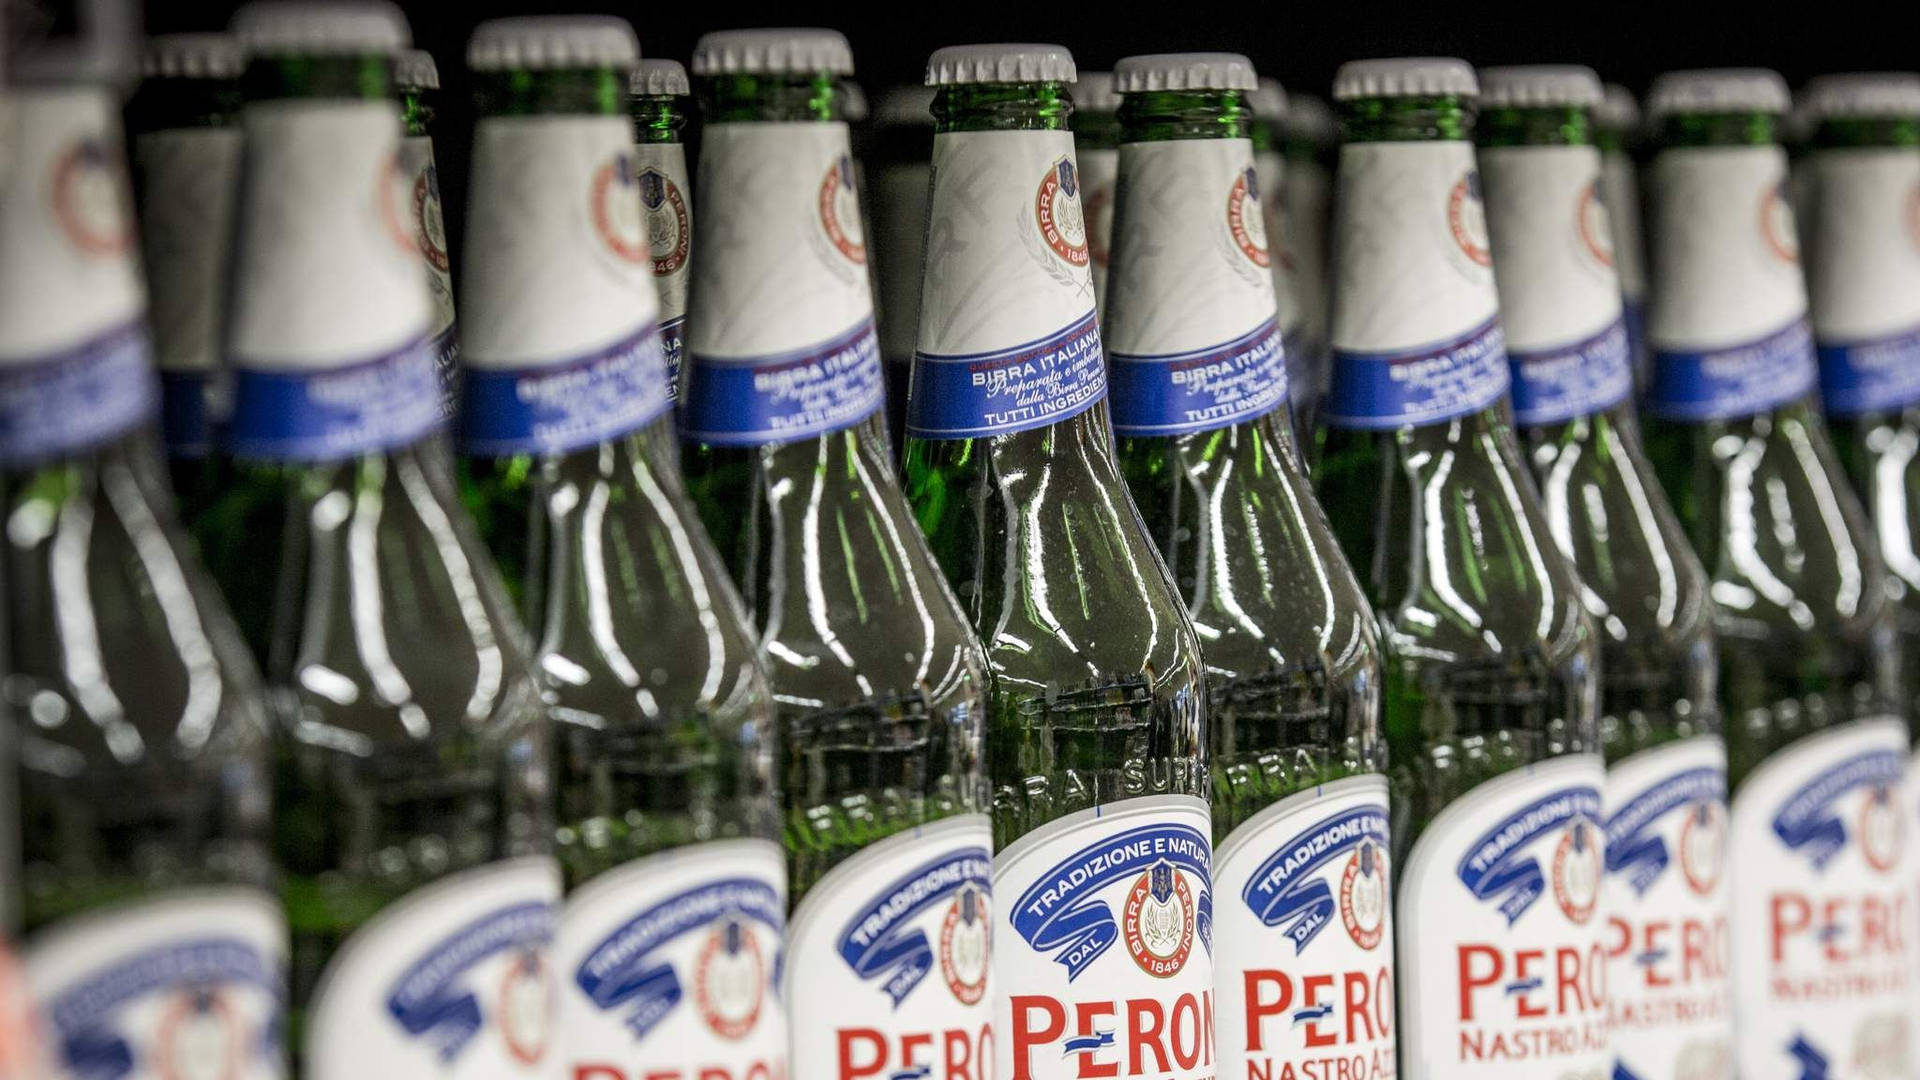 Lager af Peroni øl tapet Wallpaper